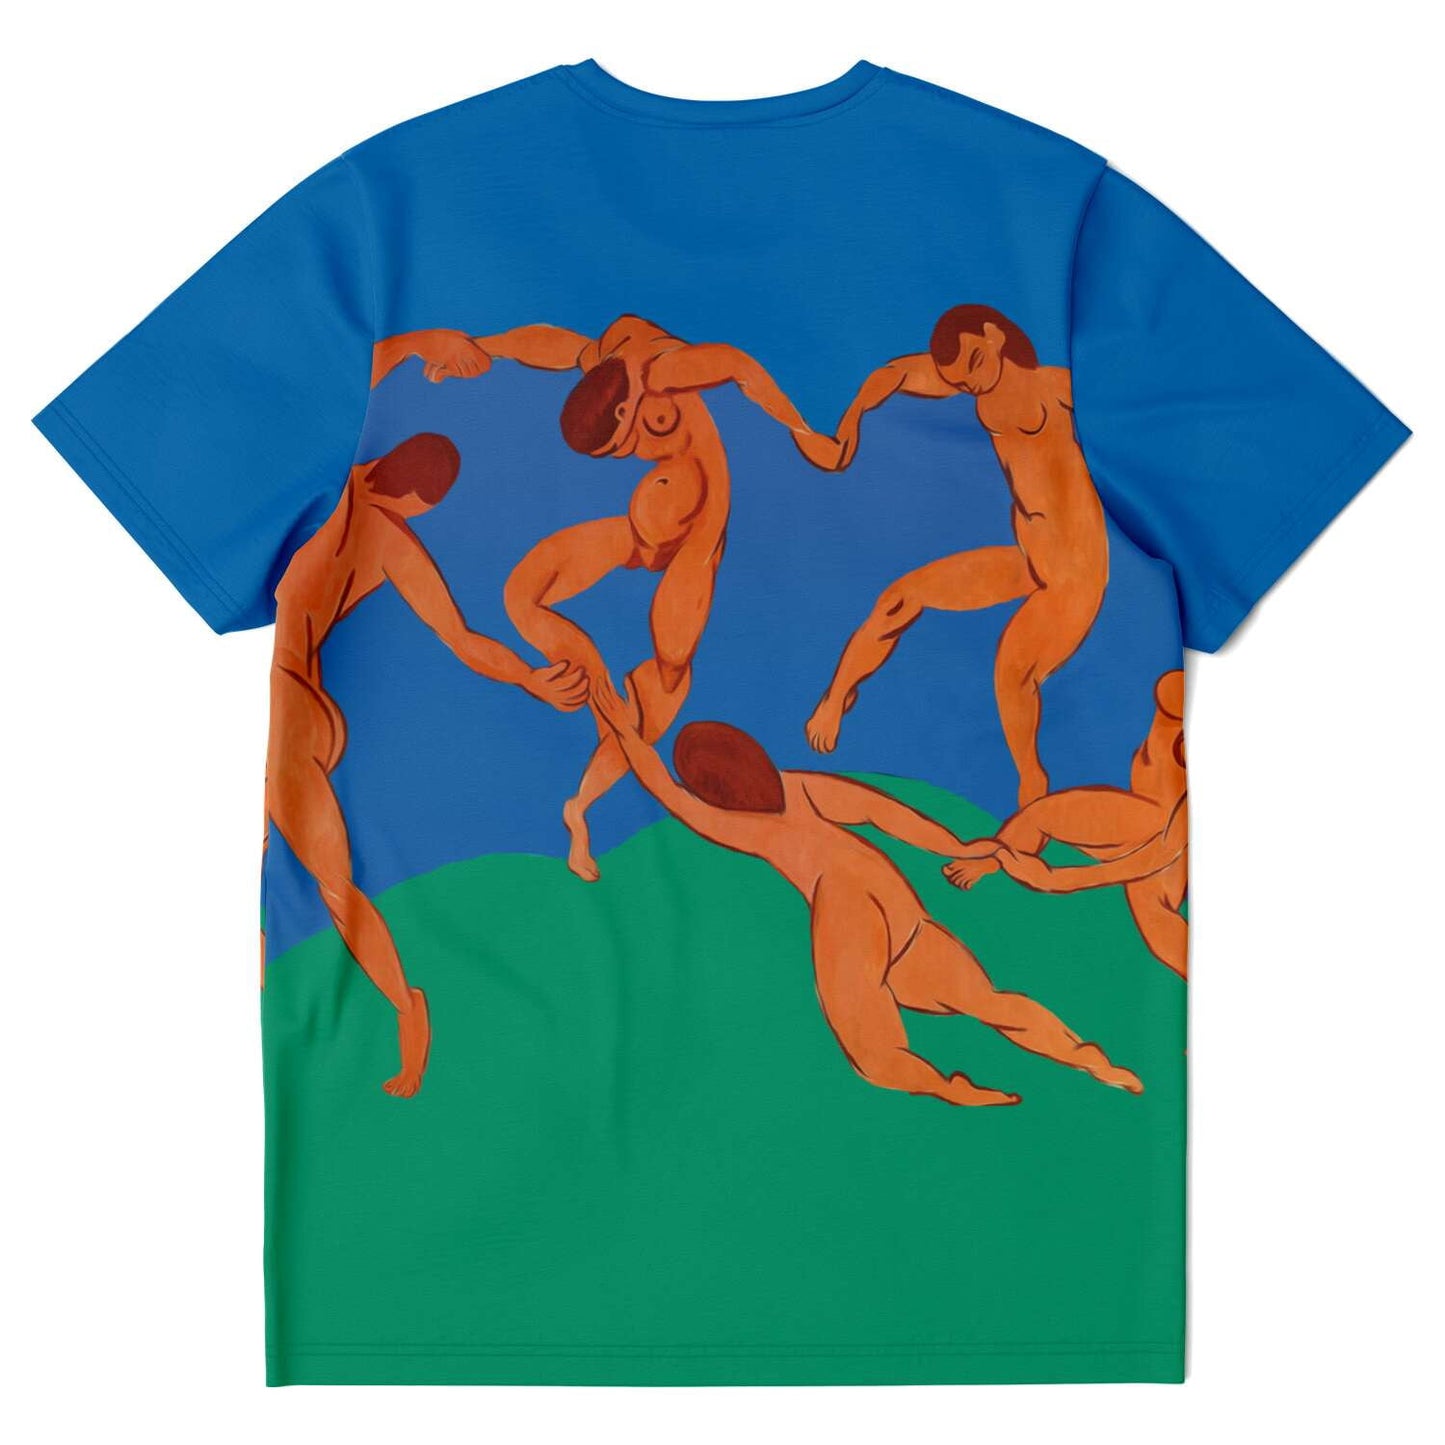 The Dance Matisse T-Shirt